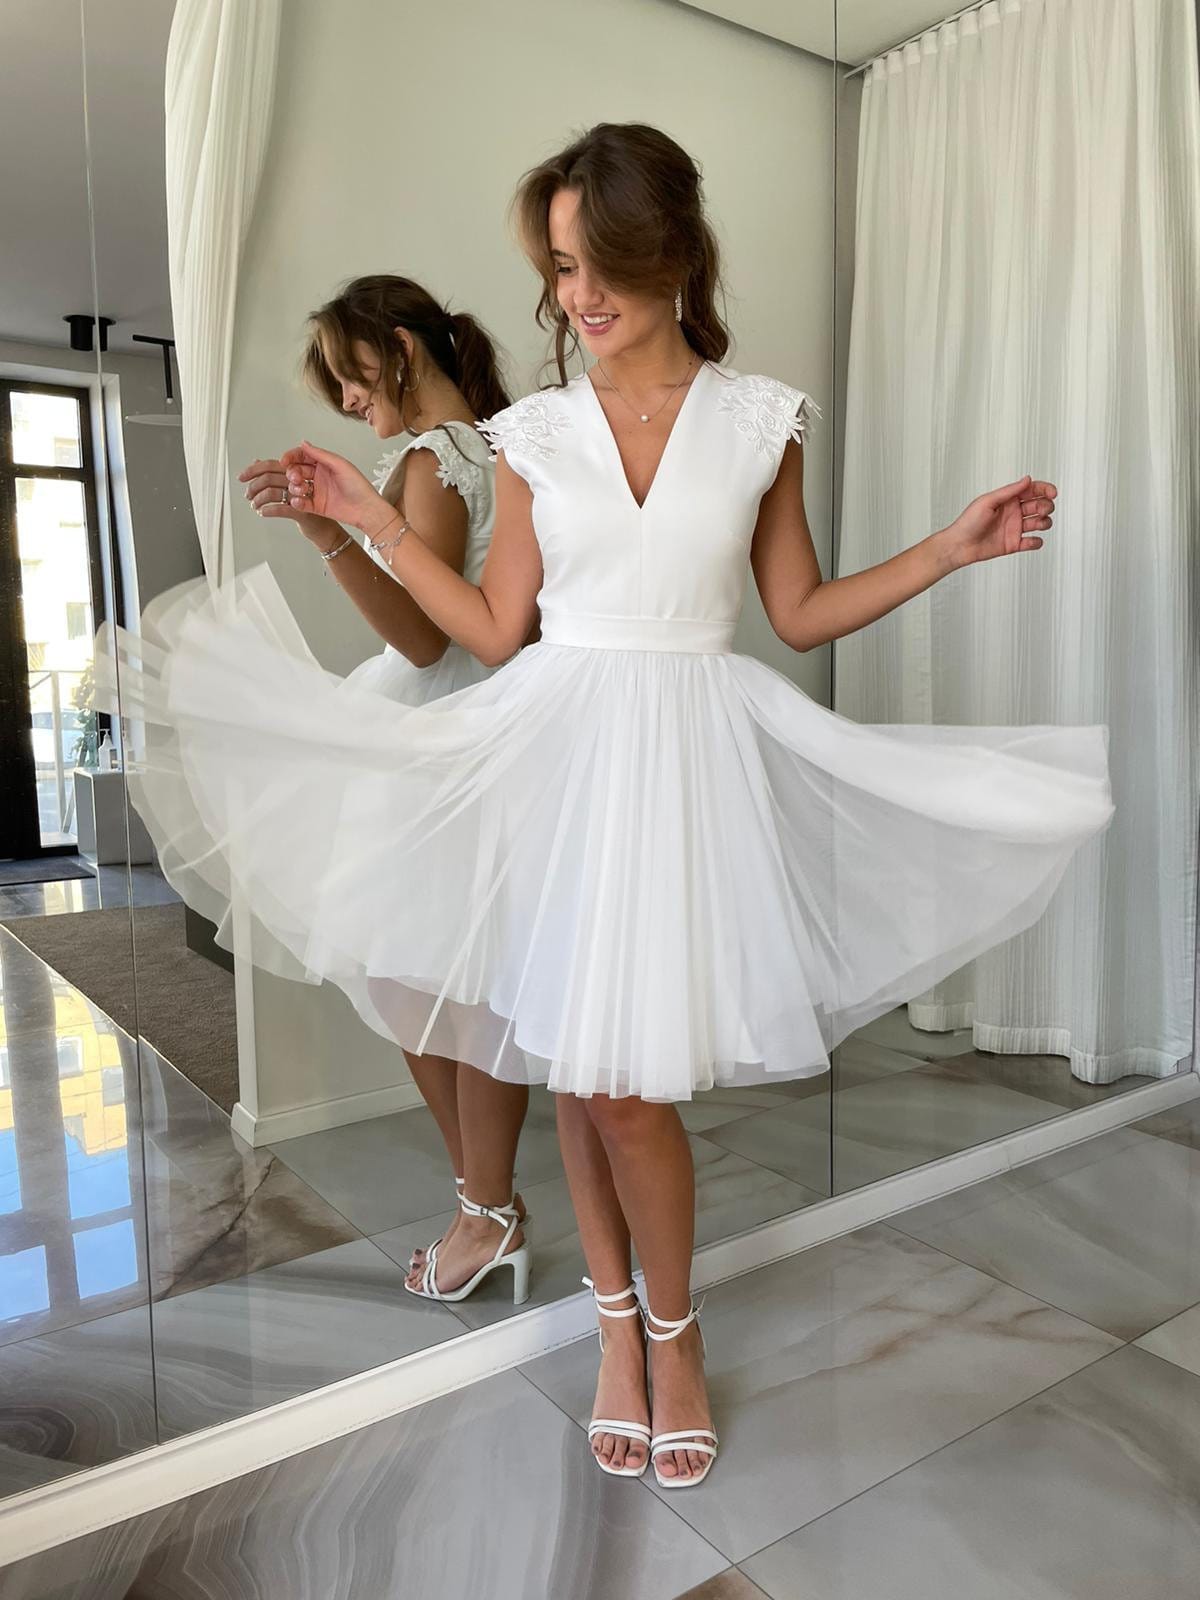 Tulle White Dress Short Wedding Dress ...